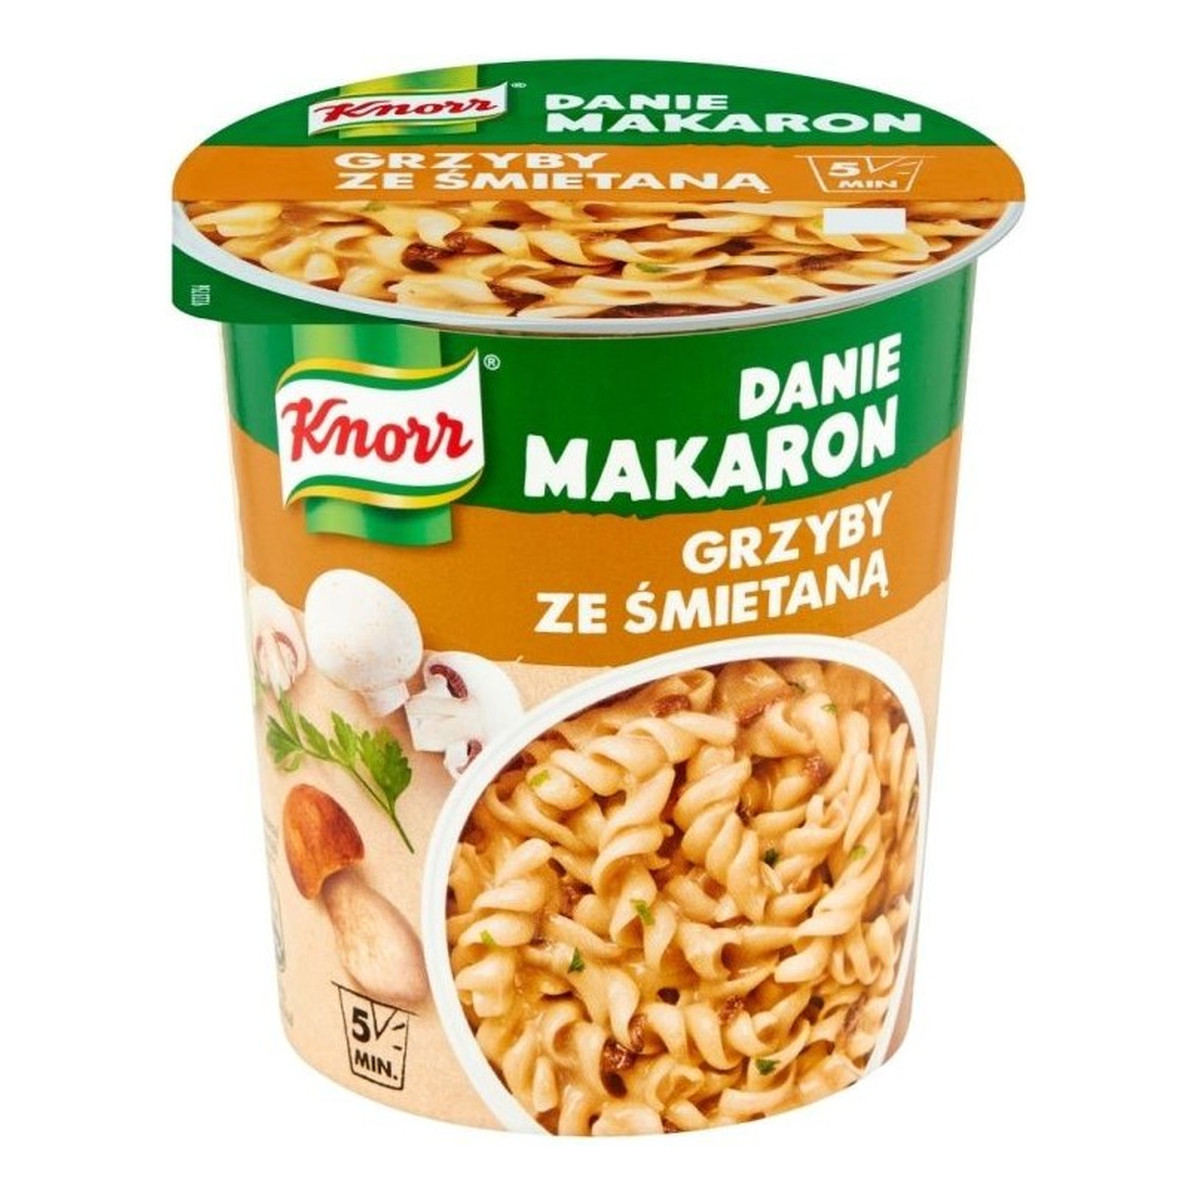 Knorr Danie Makaron Grzyby Ze Śmietaną 59g